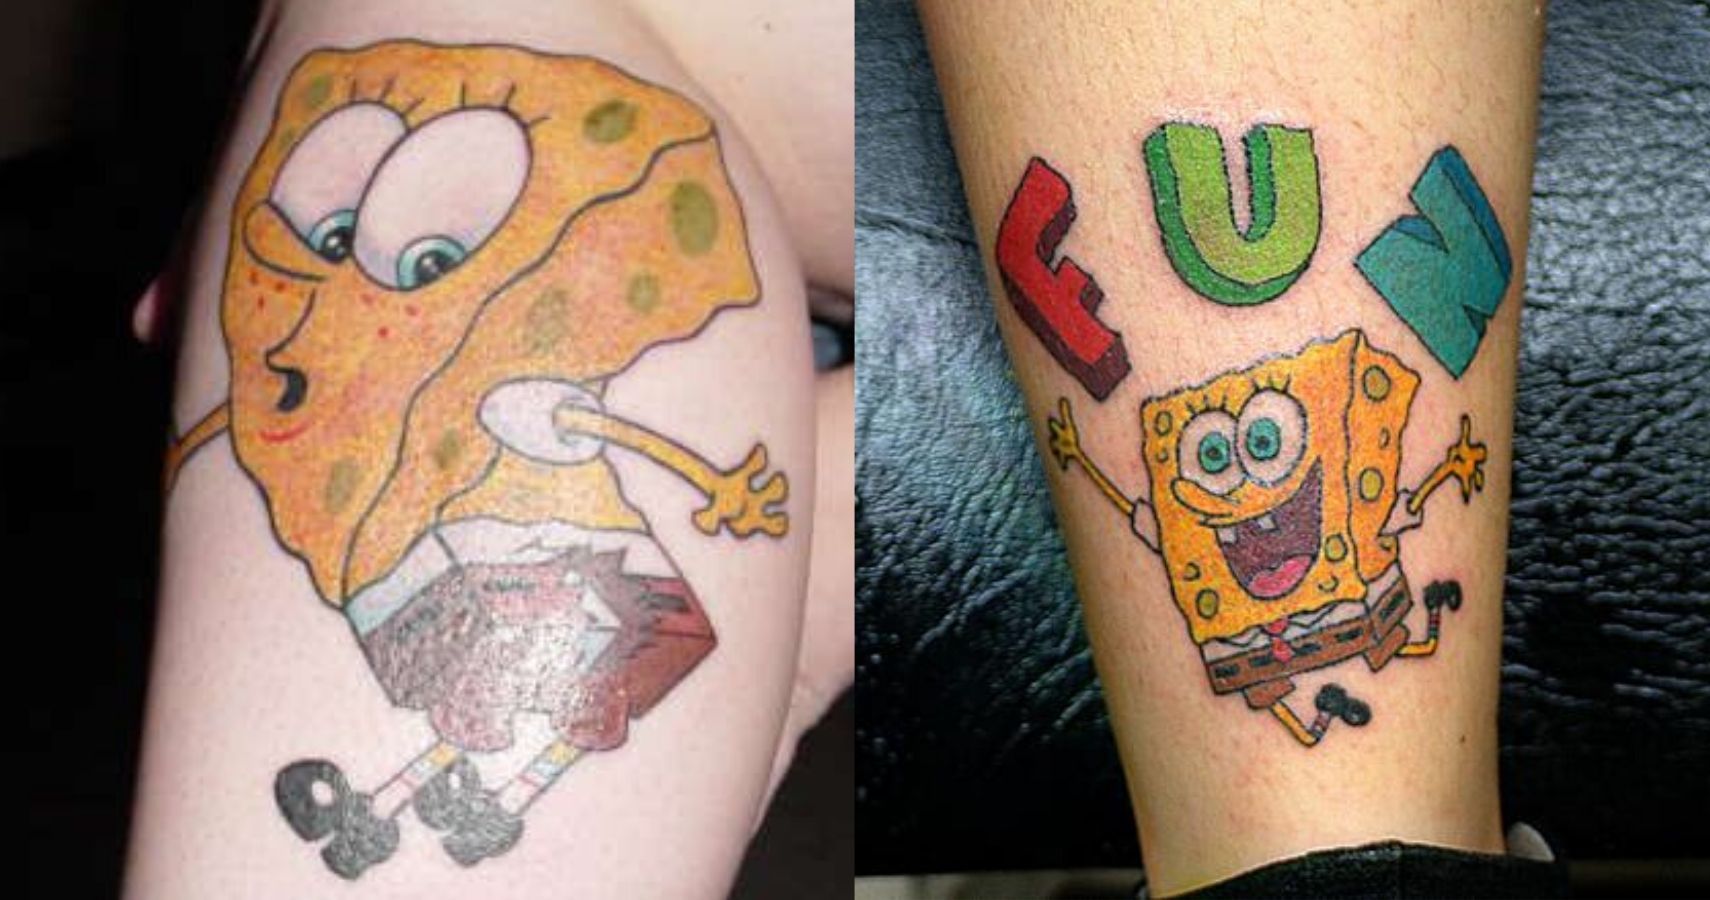 Spongebob Tattoos  Tattoo Artists  Inked Magazine  Tattoo Ideas Artists  and Models